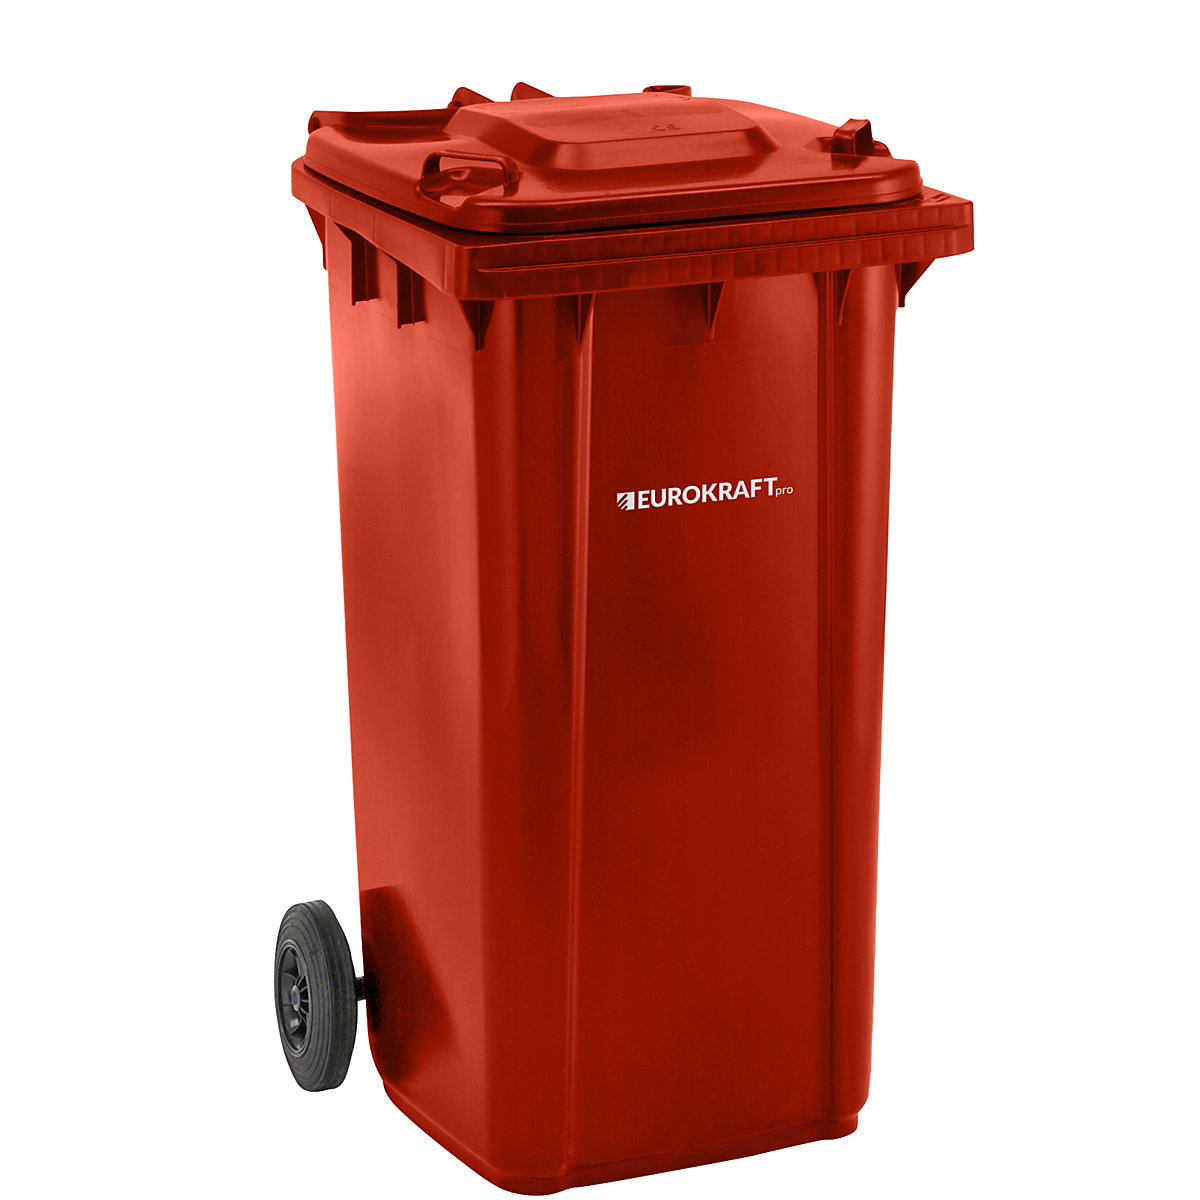 Contentor de lixo em plástico DIN EN 840 – eurokraft pro, volume 240 l, LxAxP 580 x 1100 x 740 mm, vermelho, a partir de 5 unid.-4